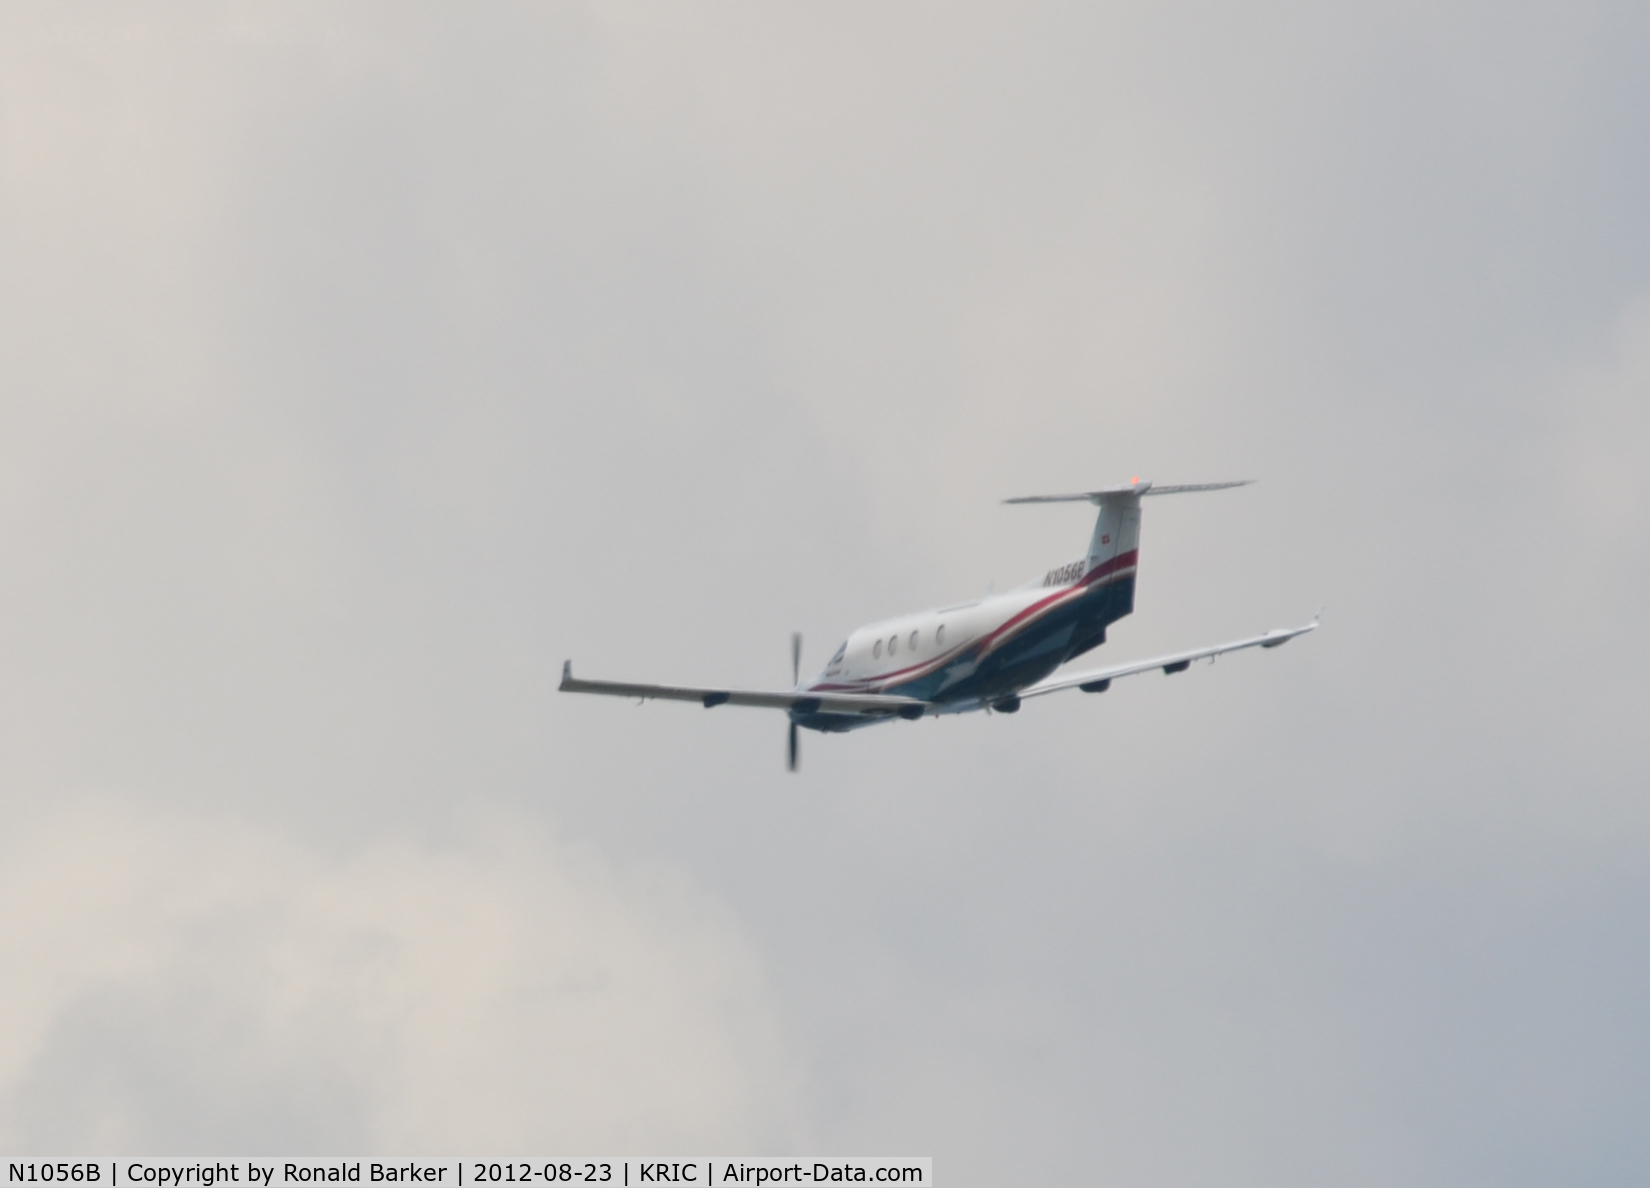 N1056B, 2003 Pilatus PC-12/45 C/N 499, Departing RIC